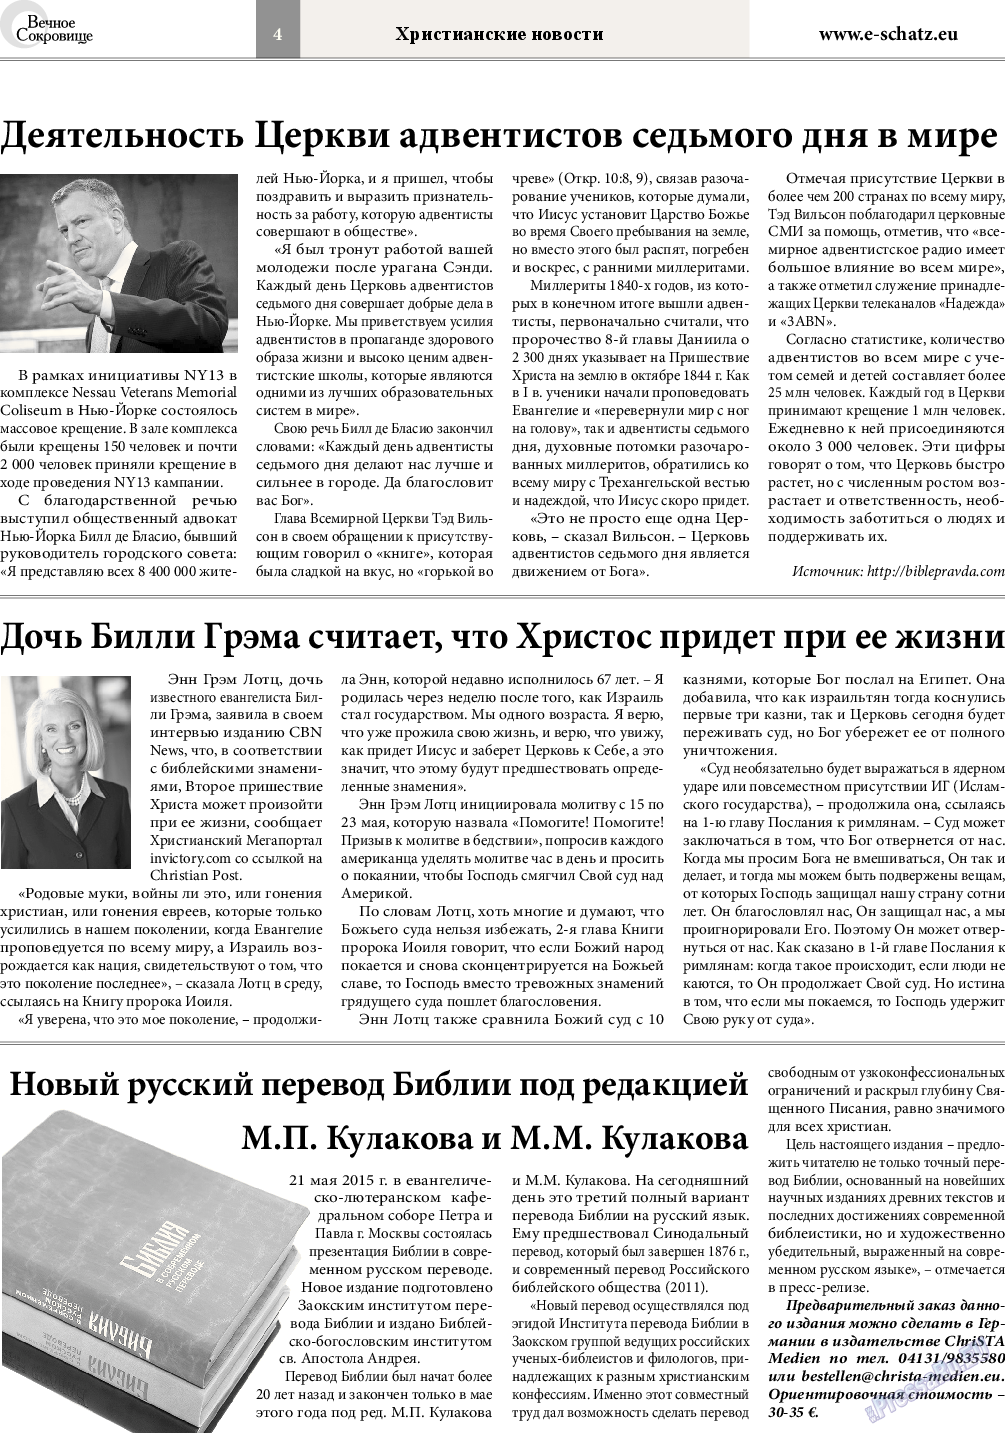 Вечное сокровище, газета. 2015 №3 стр.4